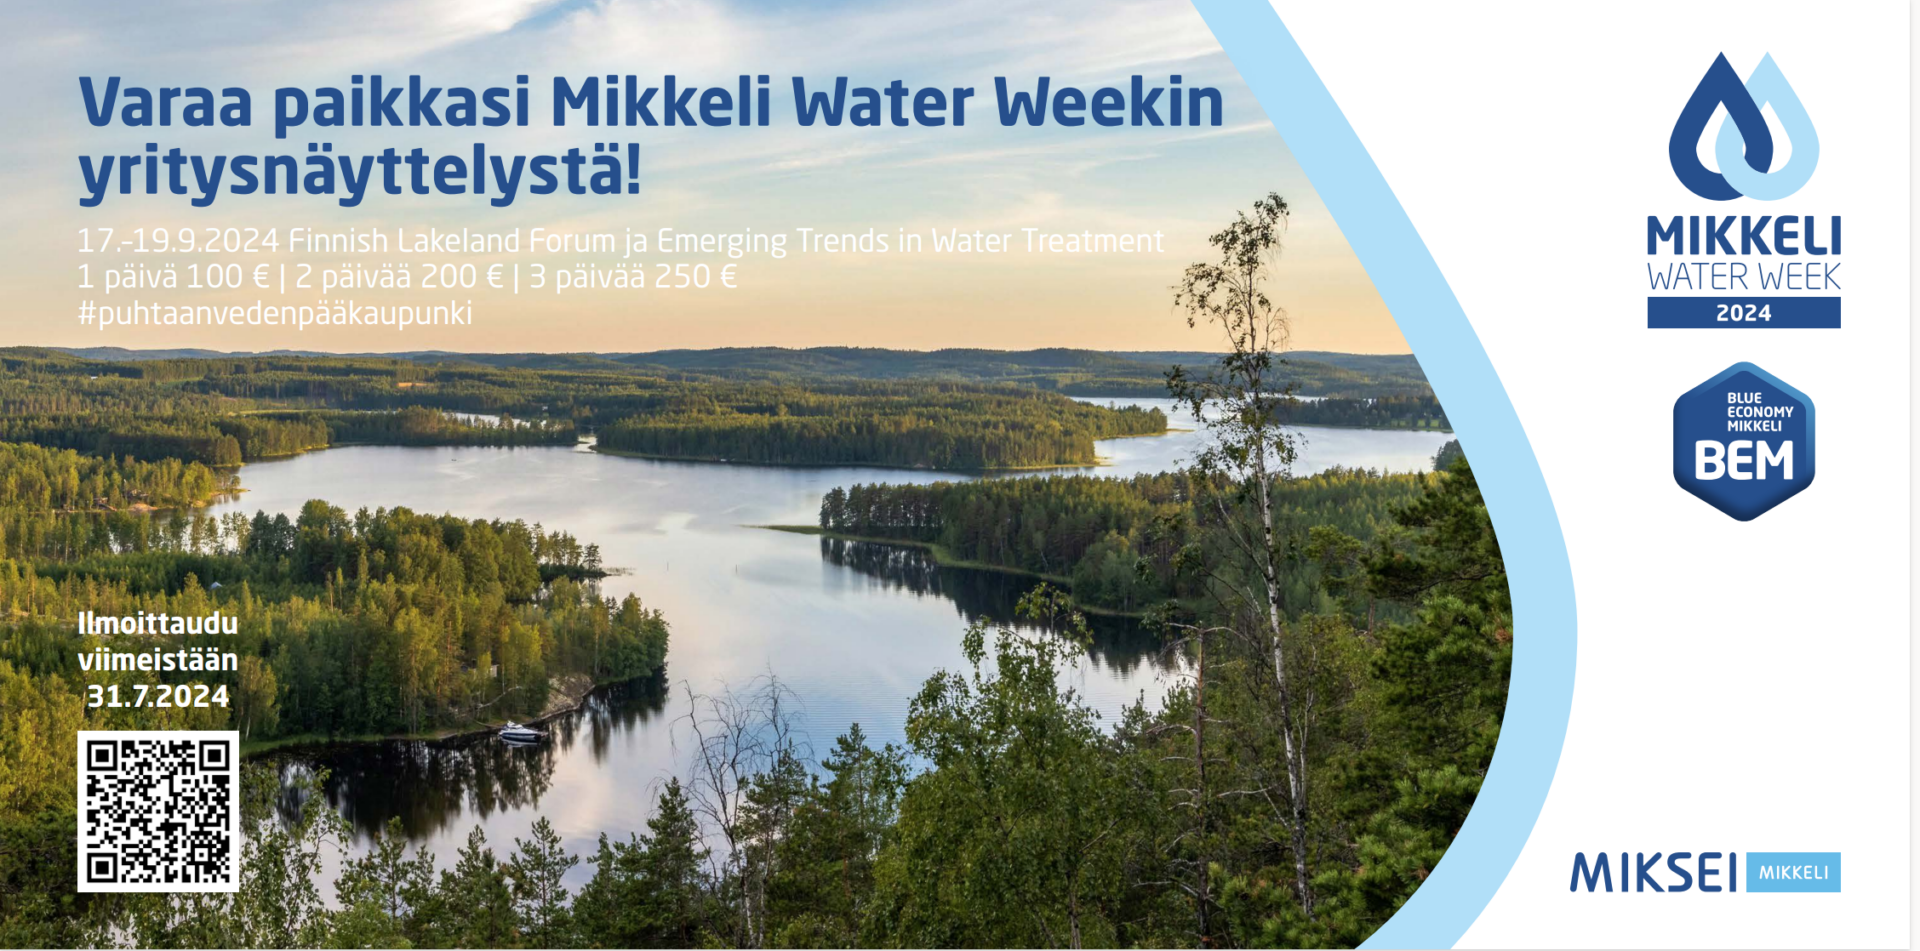 Mikkeli Water Week yritysnäyttely